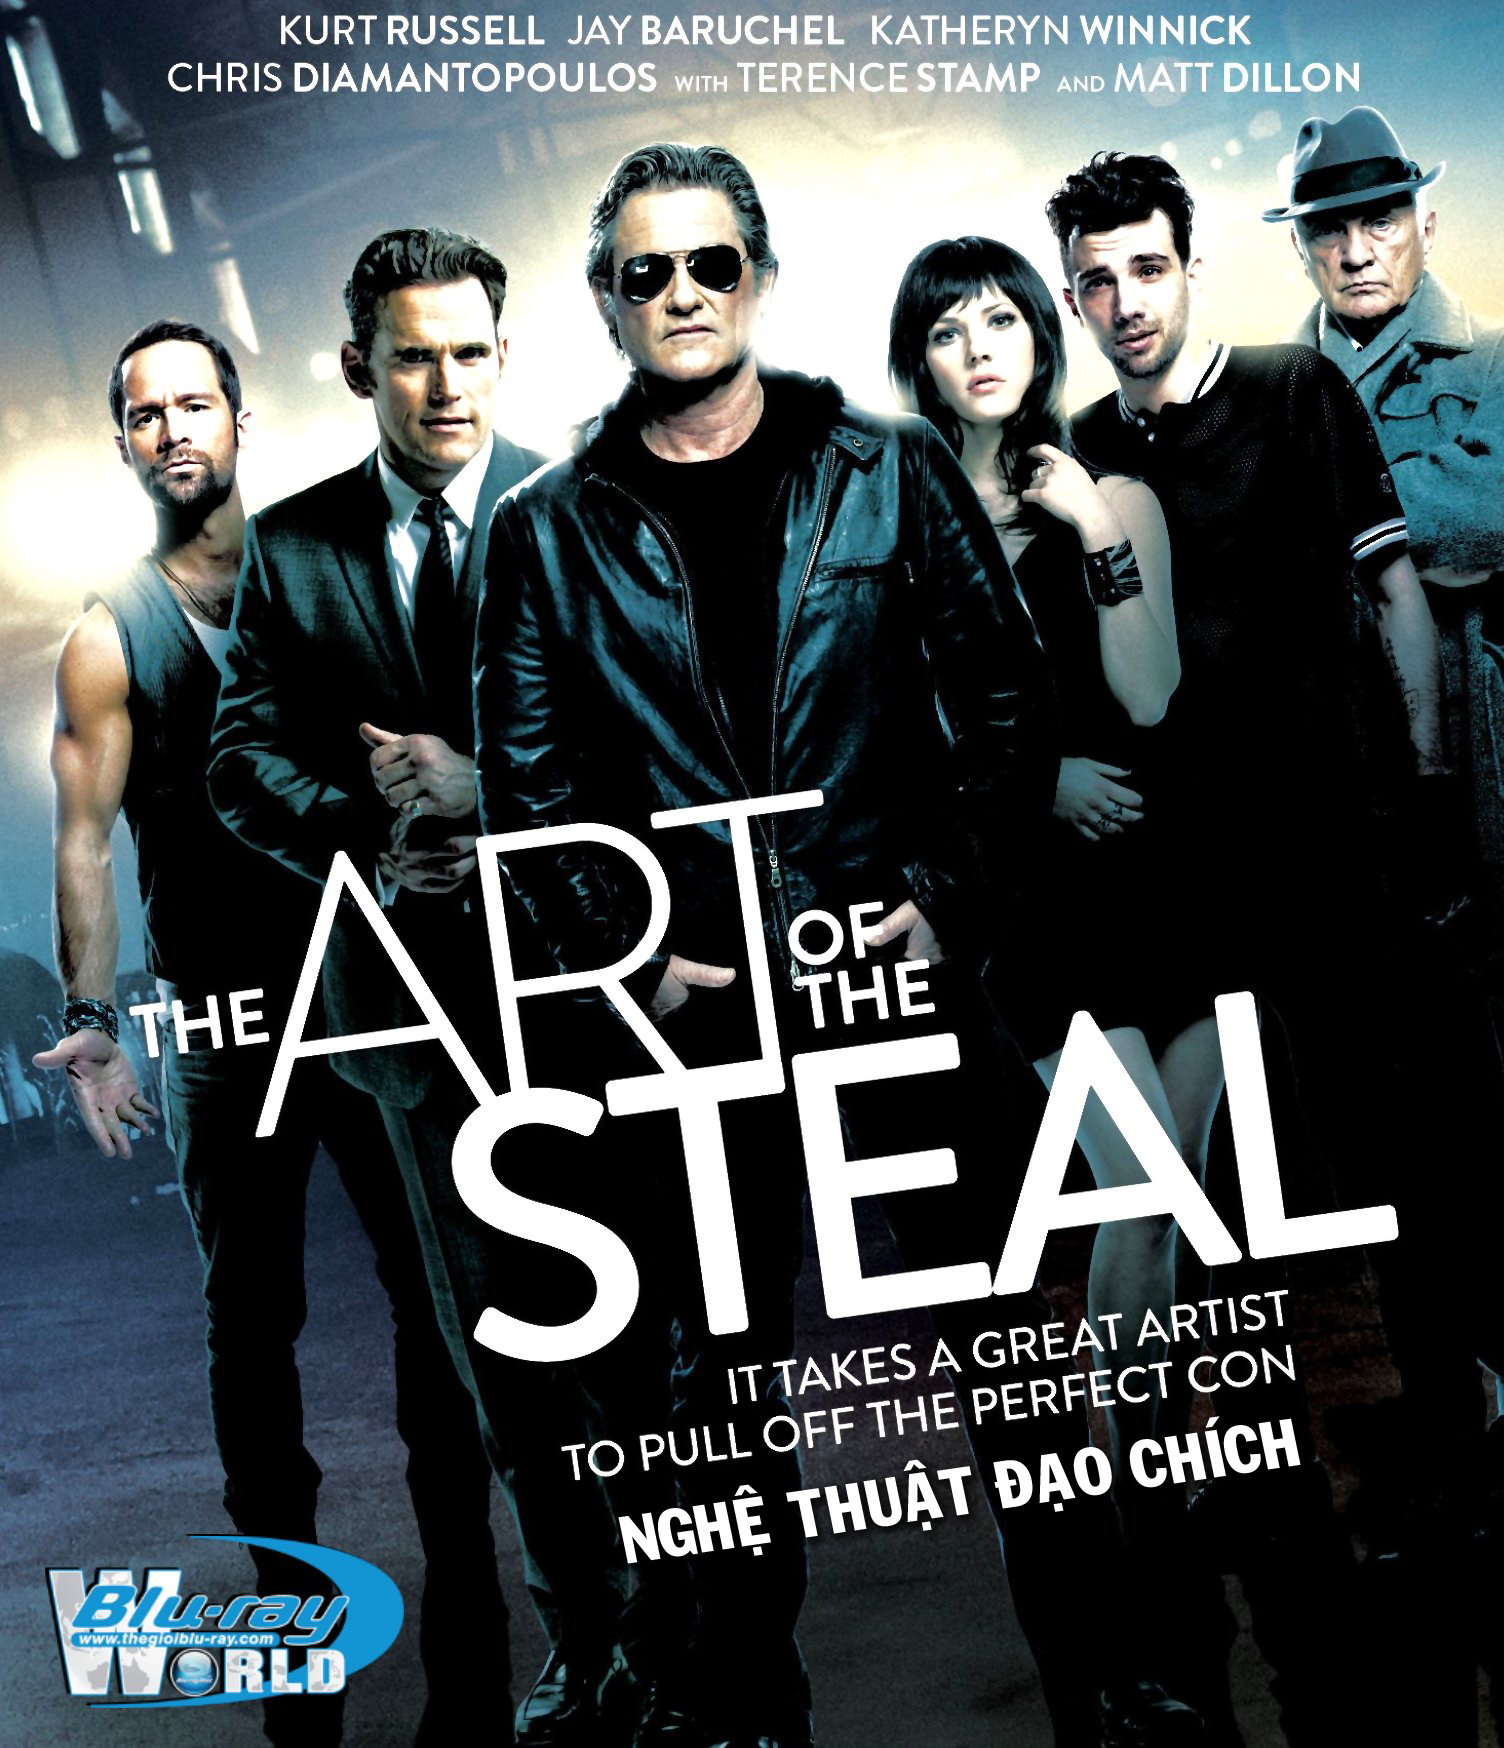 B1727. The art of the steal - NGHỆ THUẬT ĐẠO CHÍCH 2D 25G (DTS-HD MA 5.1)